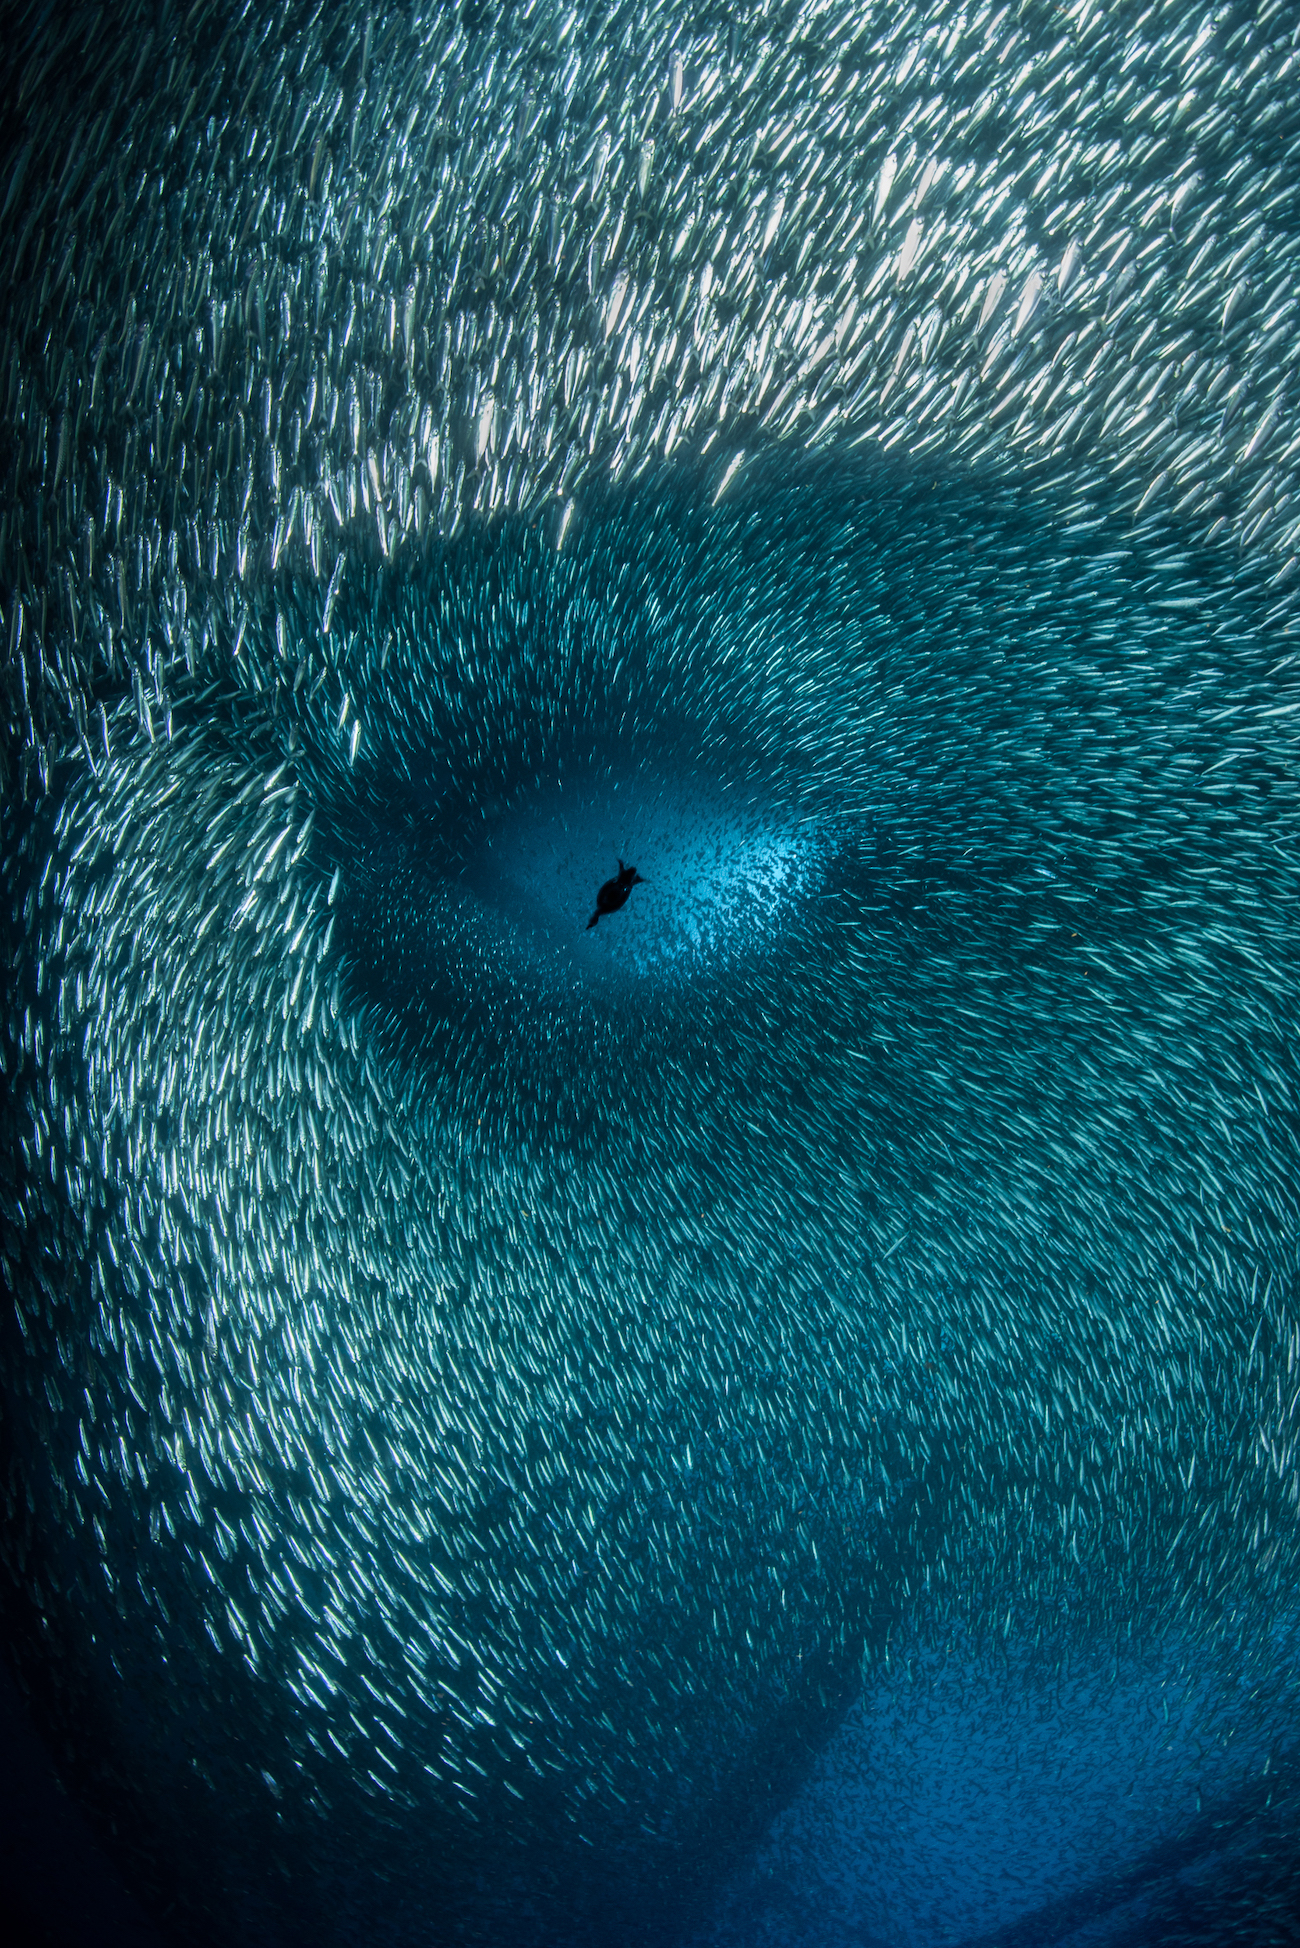 Một con chim cốc lặn qua đàn cá mồi lớn, tạo ra một chuỗi những hình dạng mô phỏng một khuôn mặt người. (Ảnh: Đăng dưới sự cho phép của nhiếp ảnh gia Brook Peterson)